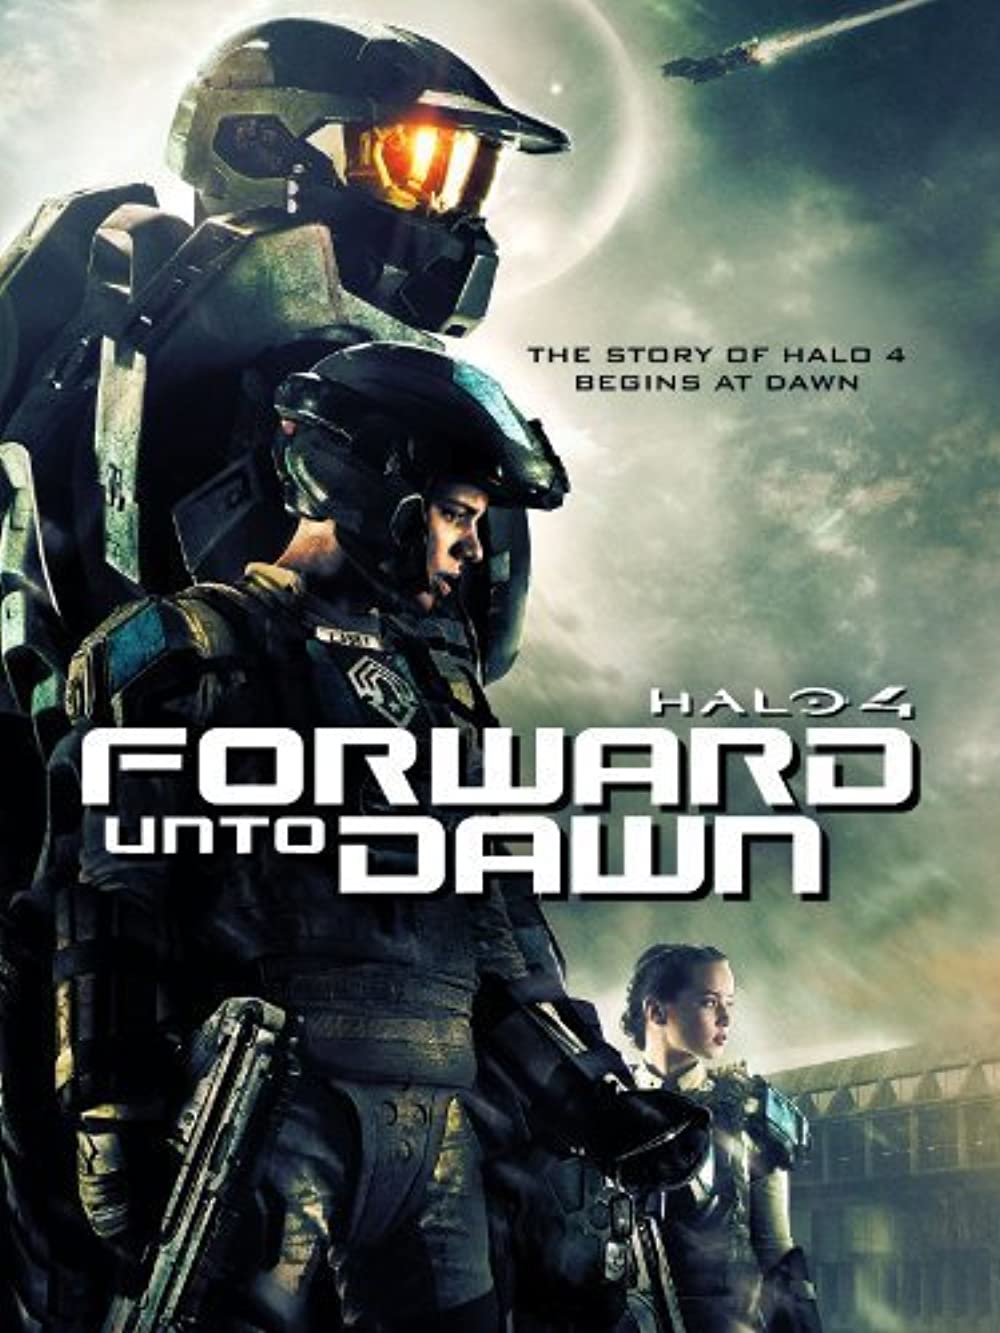 ดูหนังออนไลน์ฟรี Halo 4 Forward Unto Dawn (2012) เฮโล 4 หน่วยฝึกรบมหากาฬ หนังเต็มเรื่อง หนังมาสเตอร์ ดูหนังHD ดูหนังออนไลน์ ดูหนังใหม่